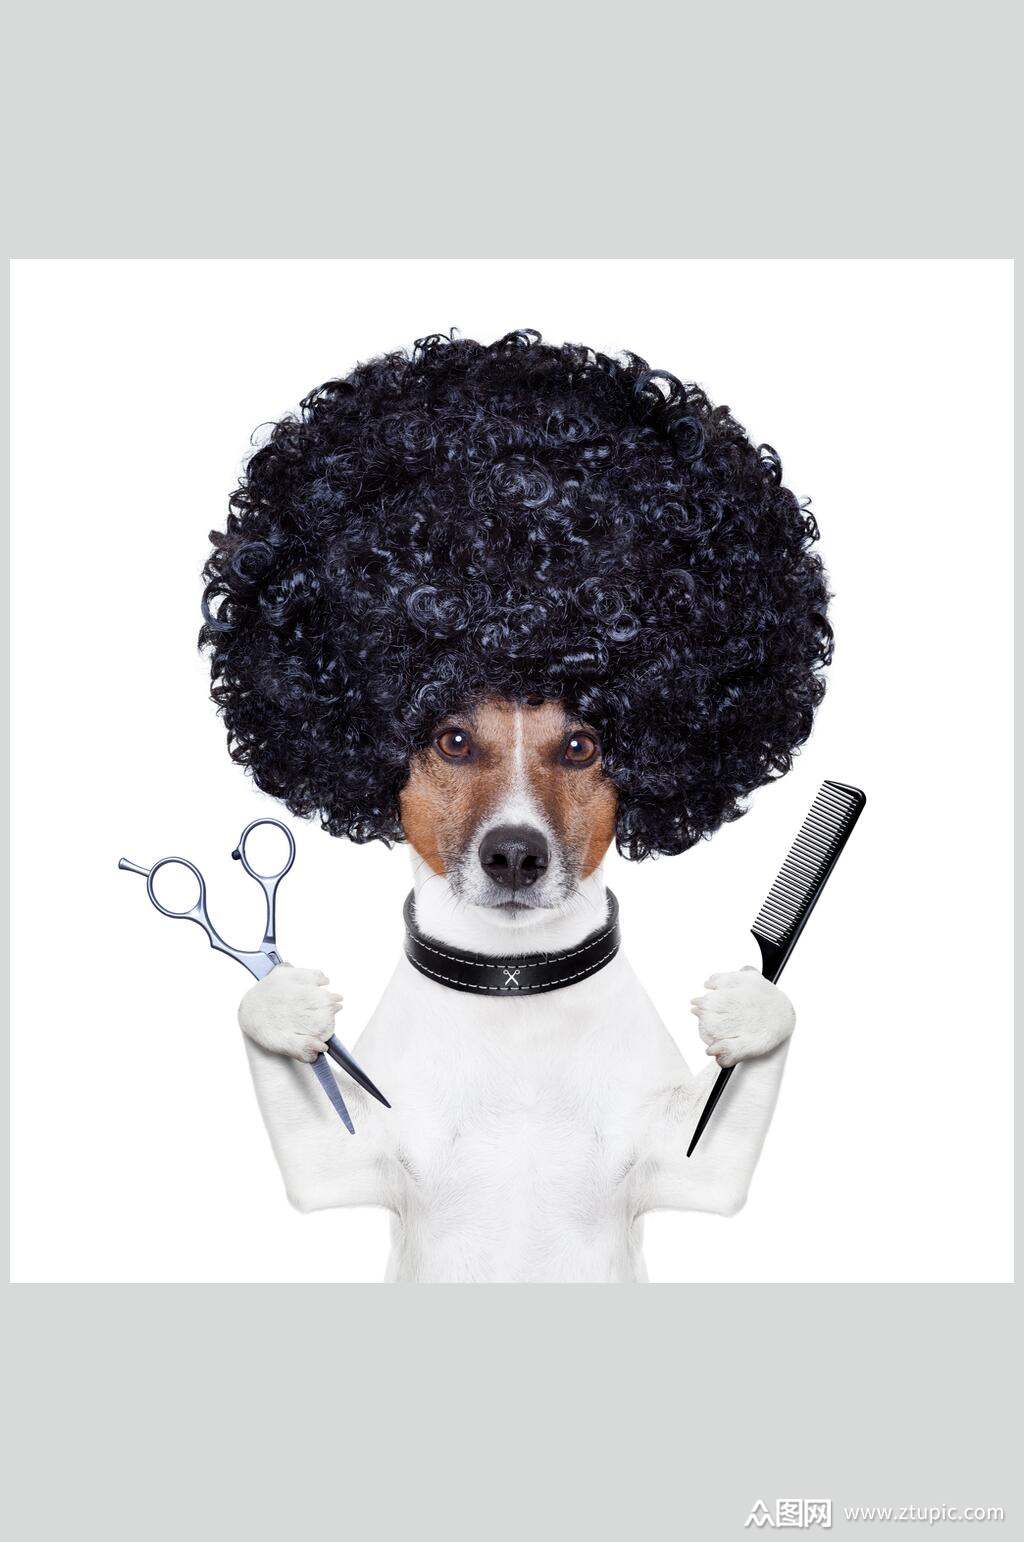 有一天,一只狗走进理发店,对猴子理发师说:给我剪个发型,像个人样的